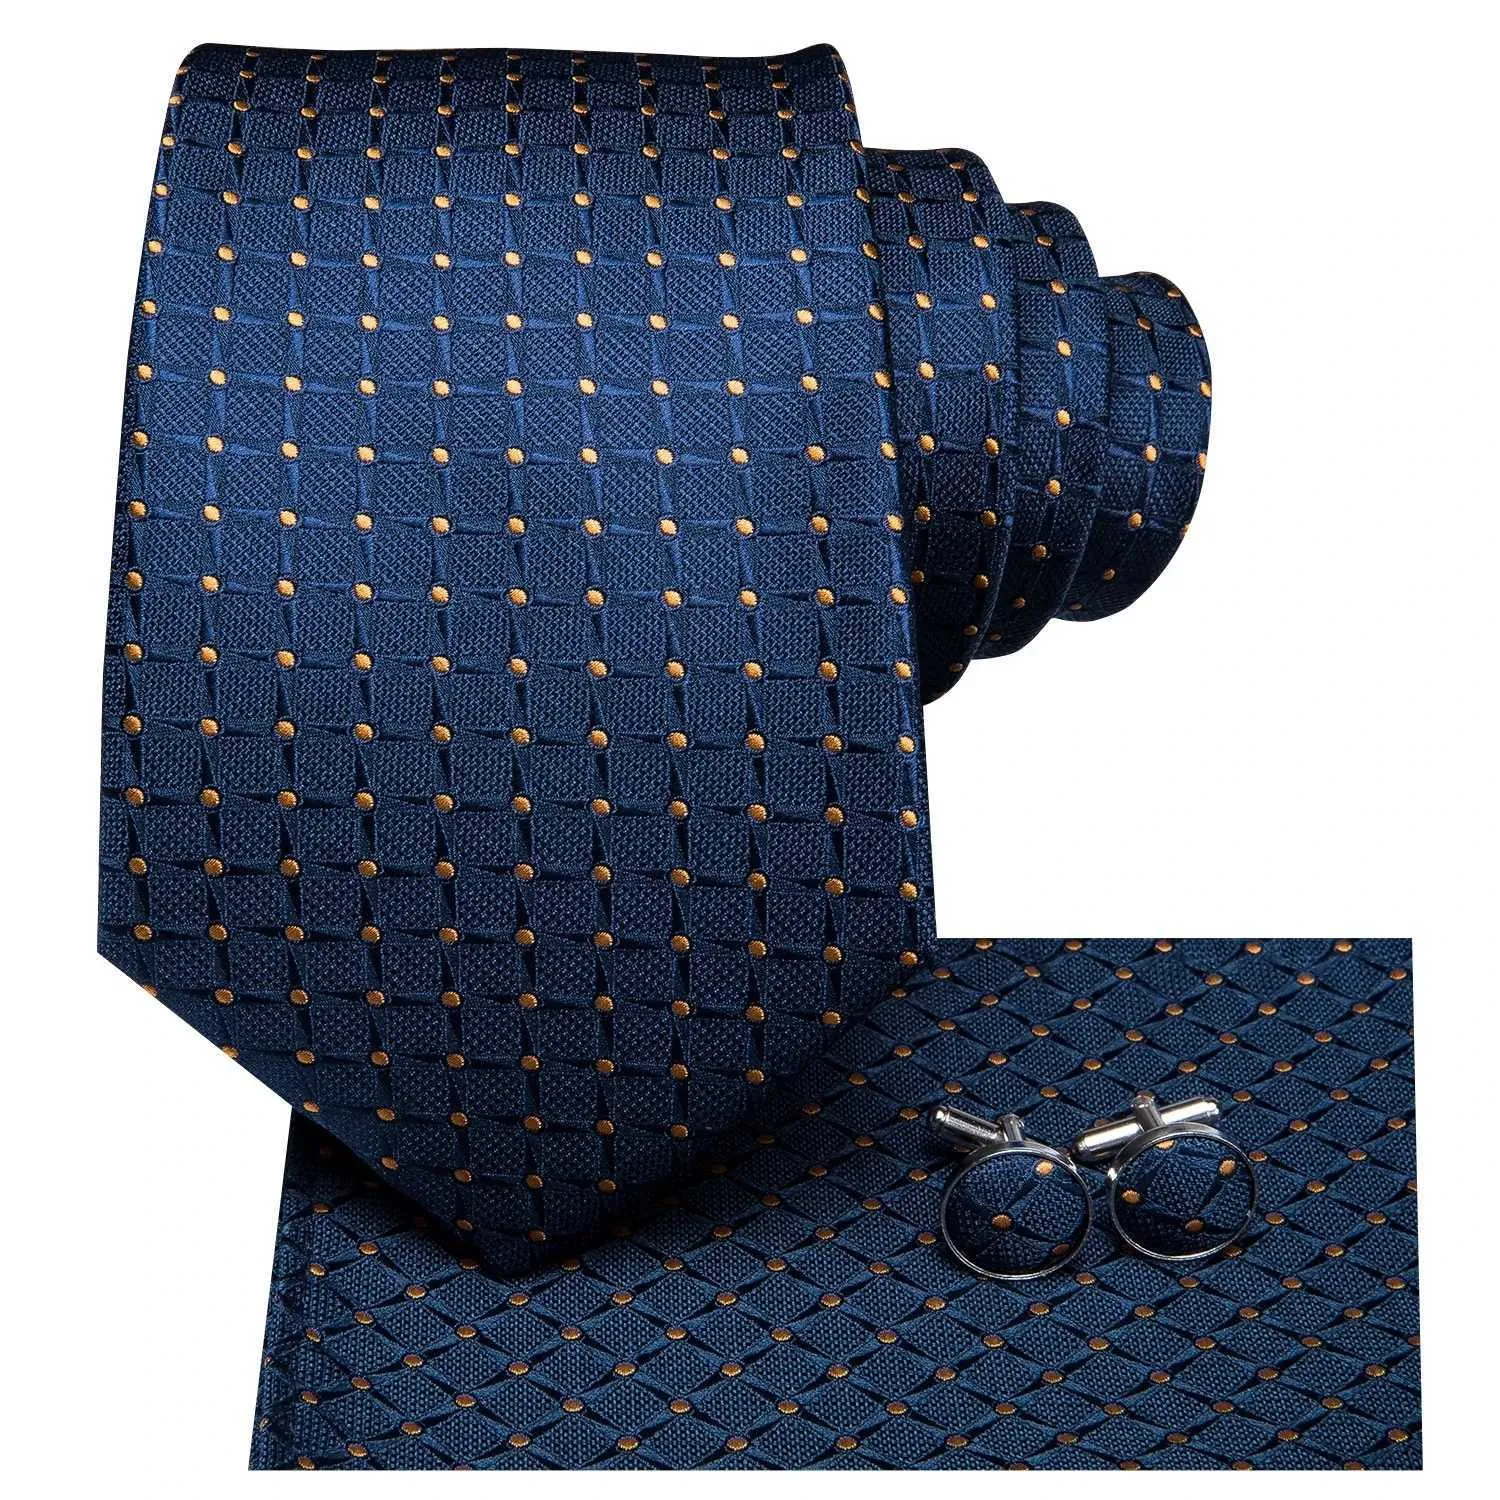 Erkekler için boyun kravat seti iş kravat seti klasik lüks marka tasarımcısı ipek kravatlar kolkuklar mendil düğün iş hediye kutusu seti